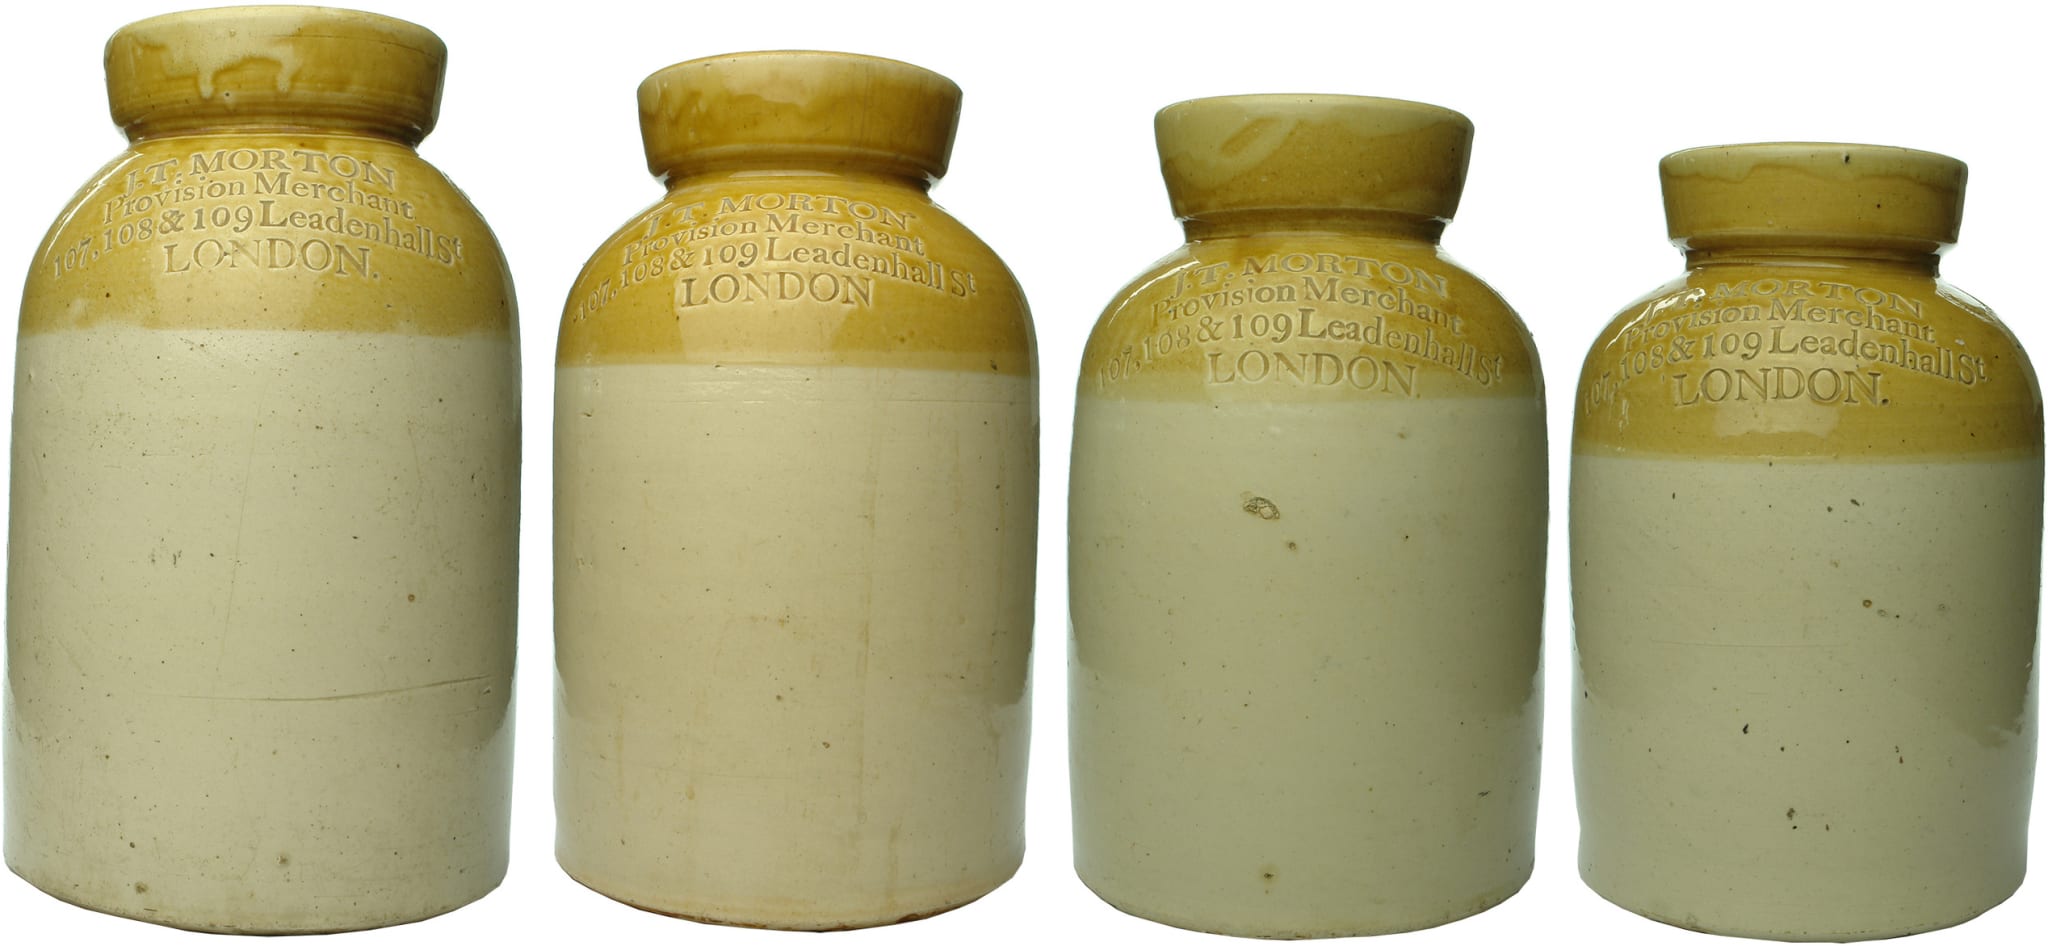 Morton London Stoneware Jars